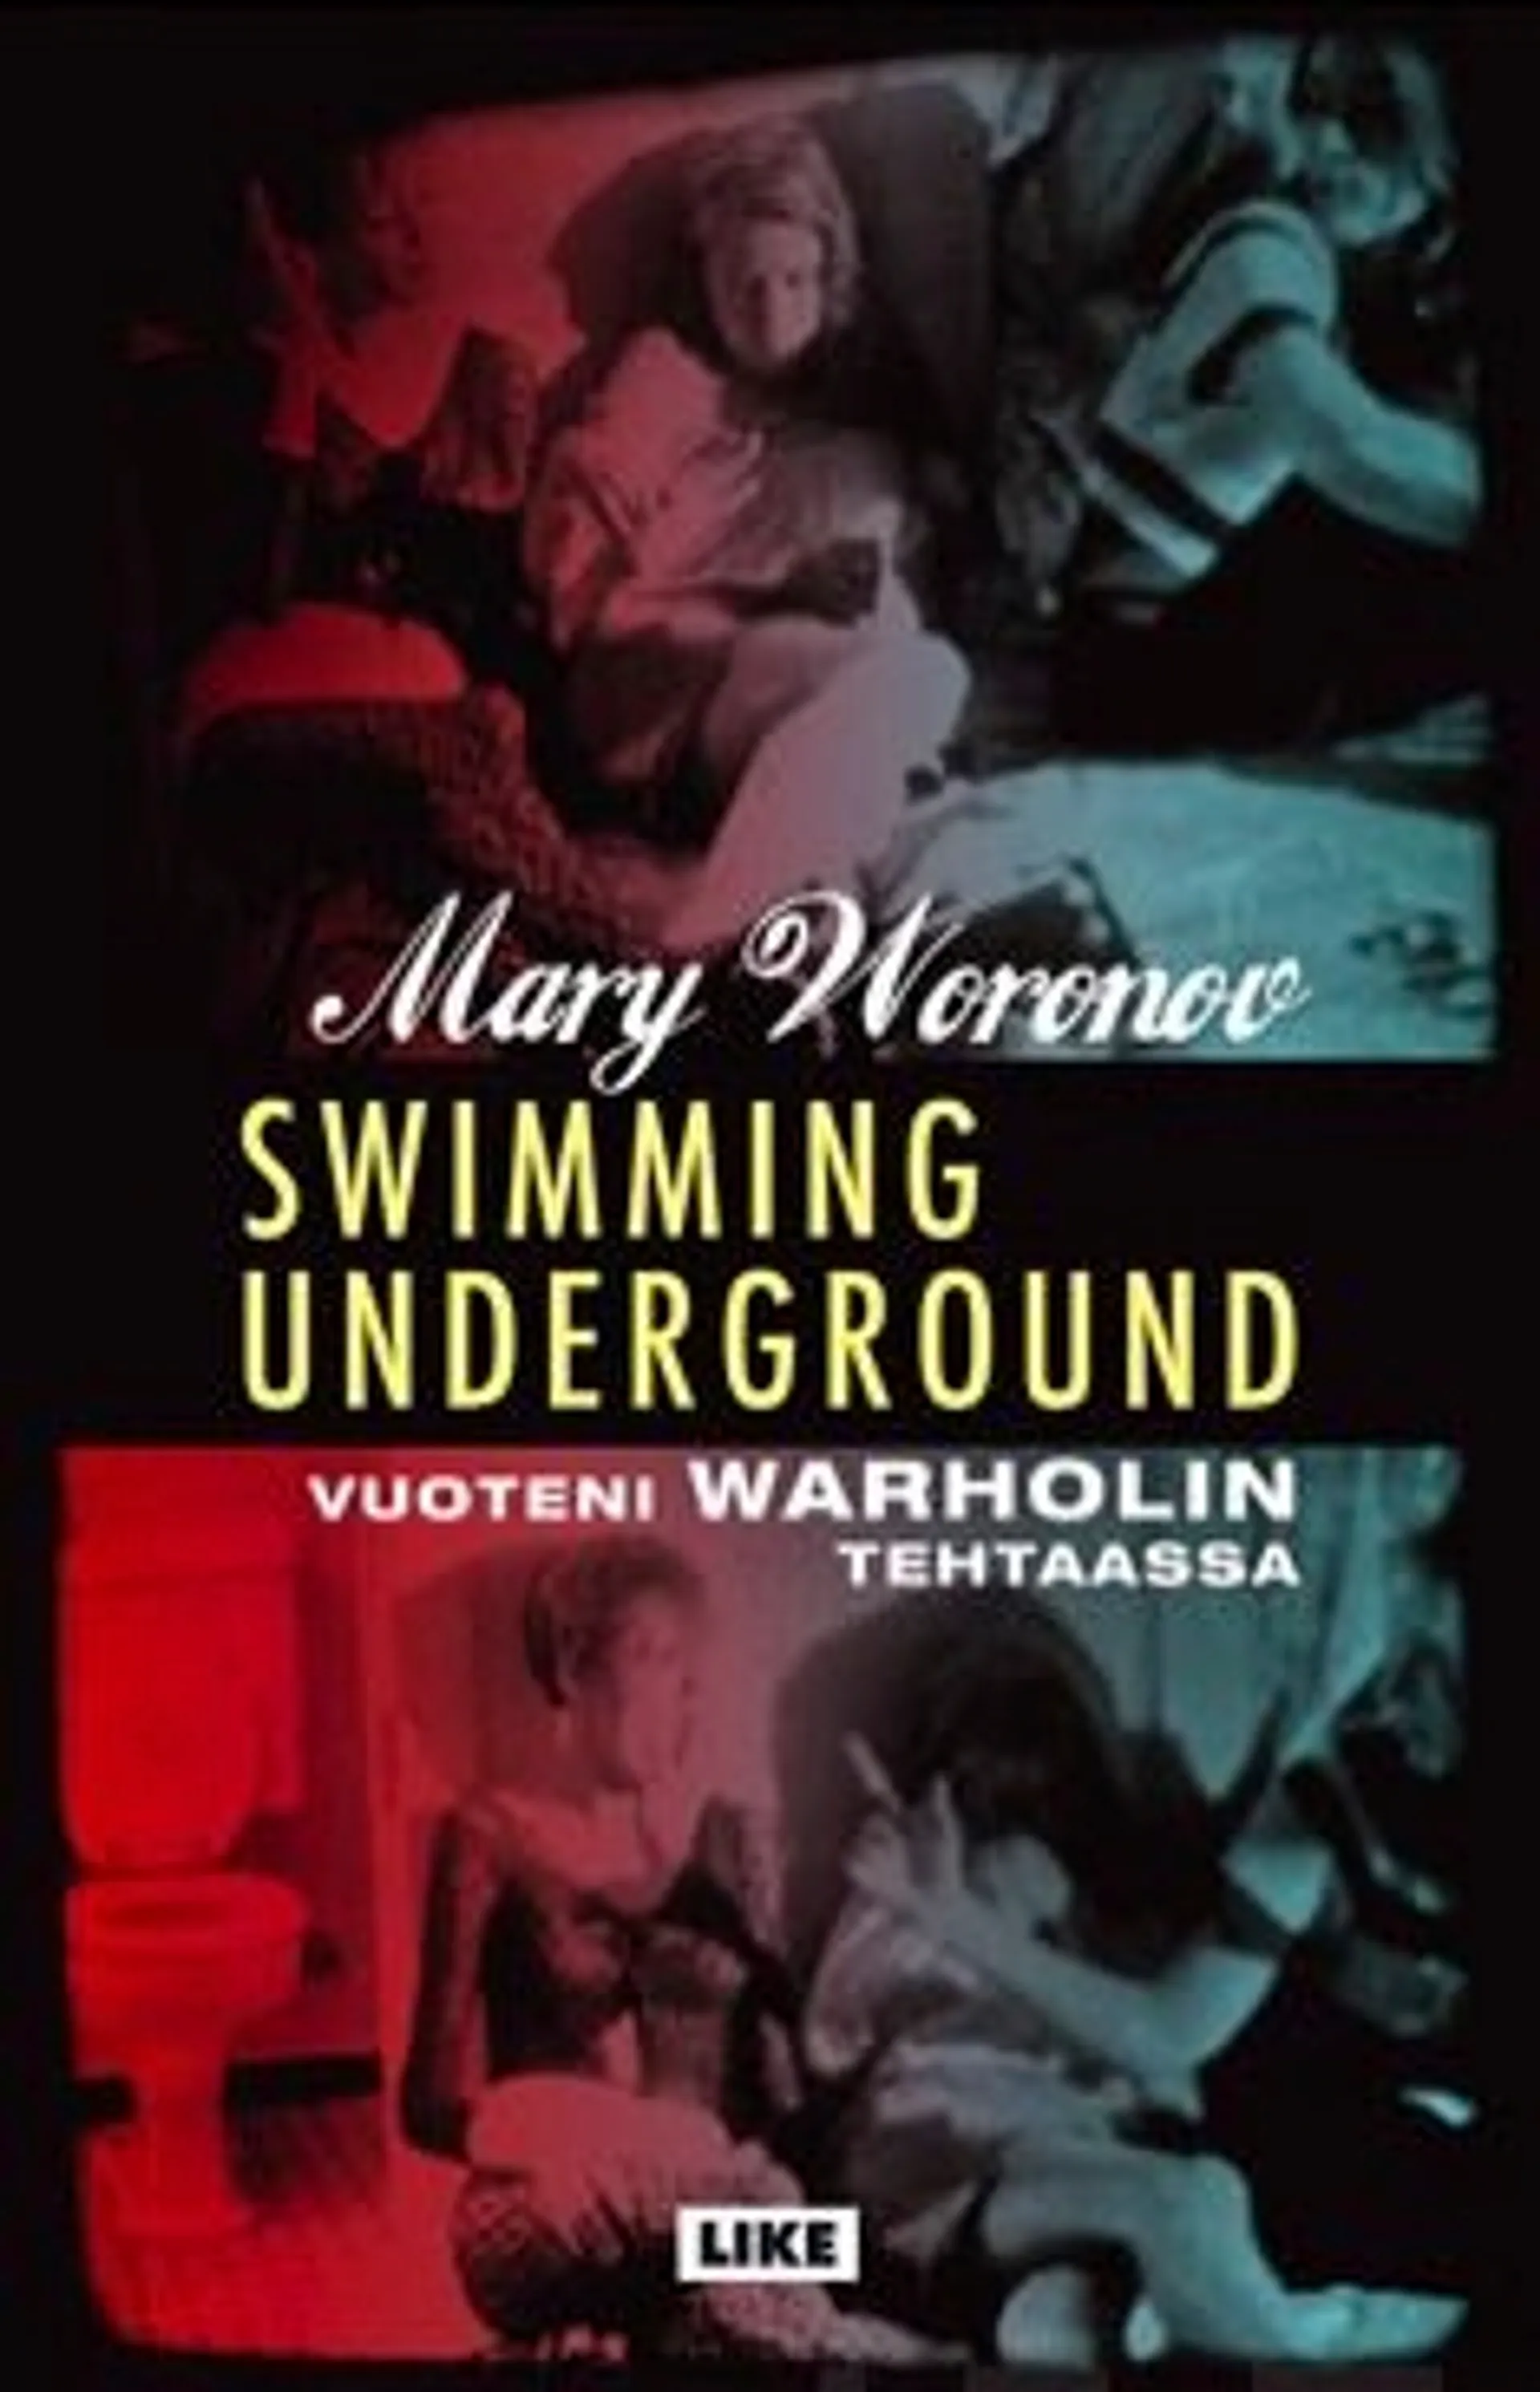 Woronov, Swimming underground